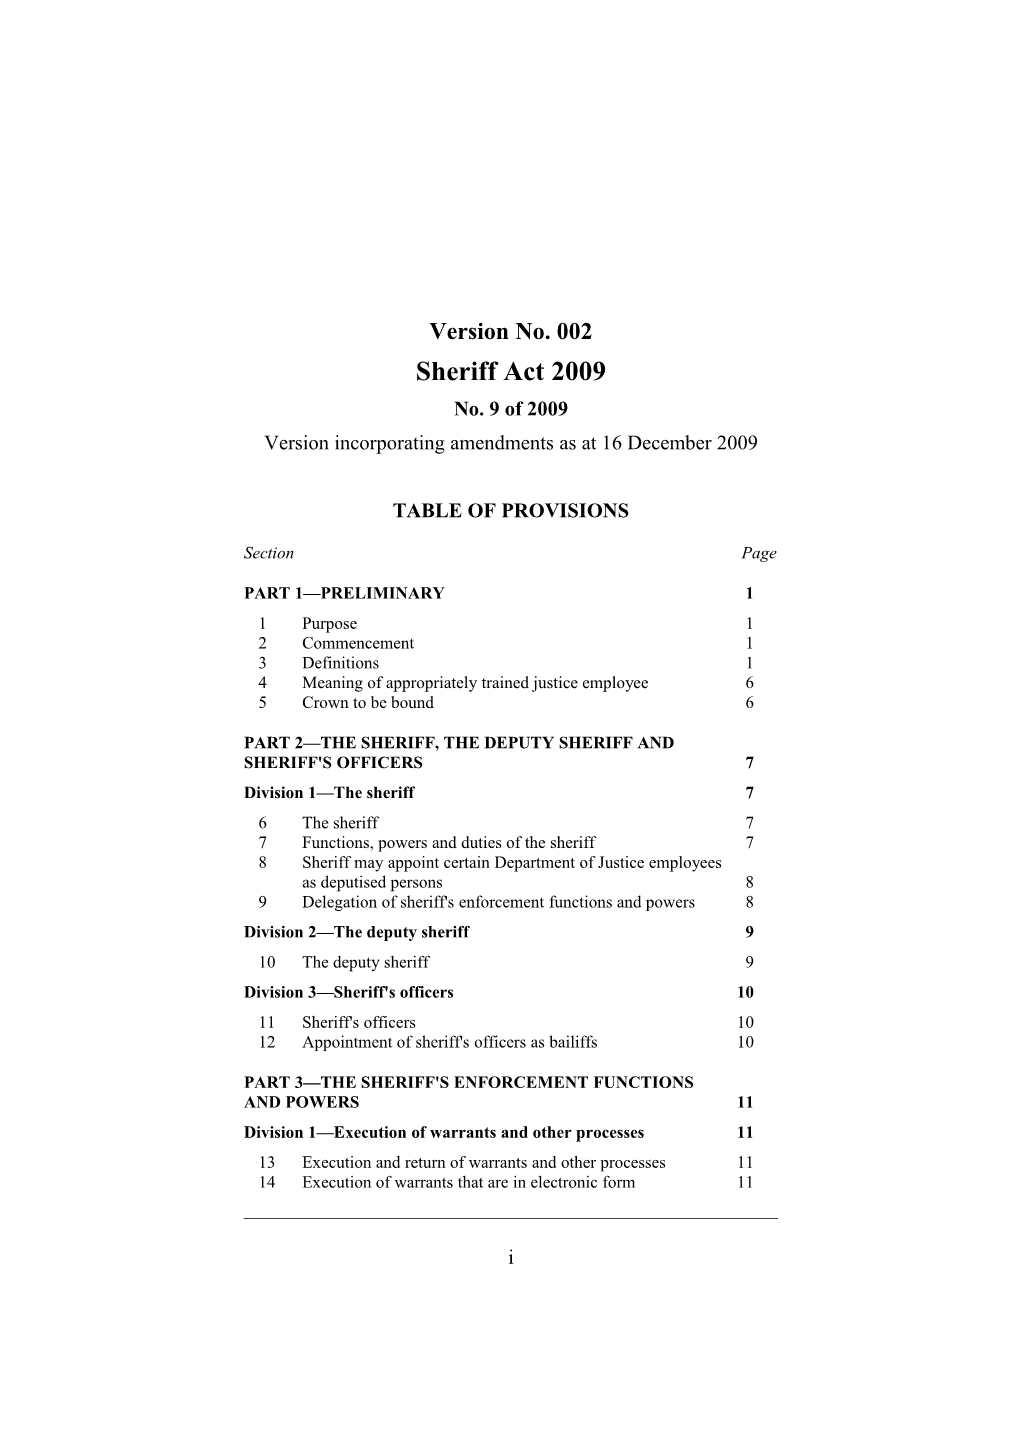 Version Incorporating Amendments As at 16 December 2009